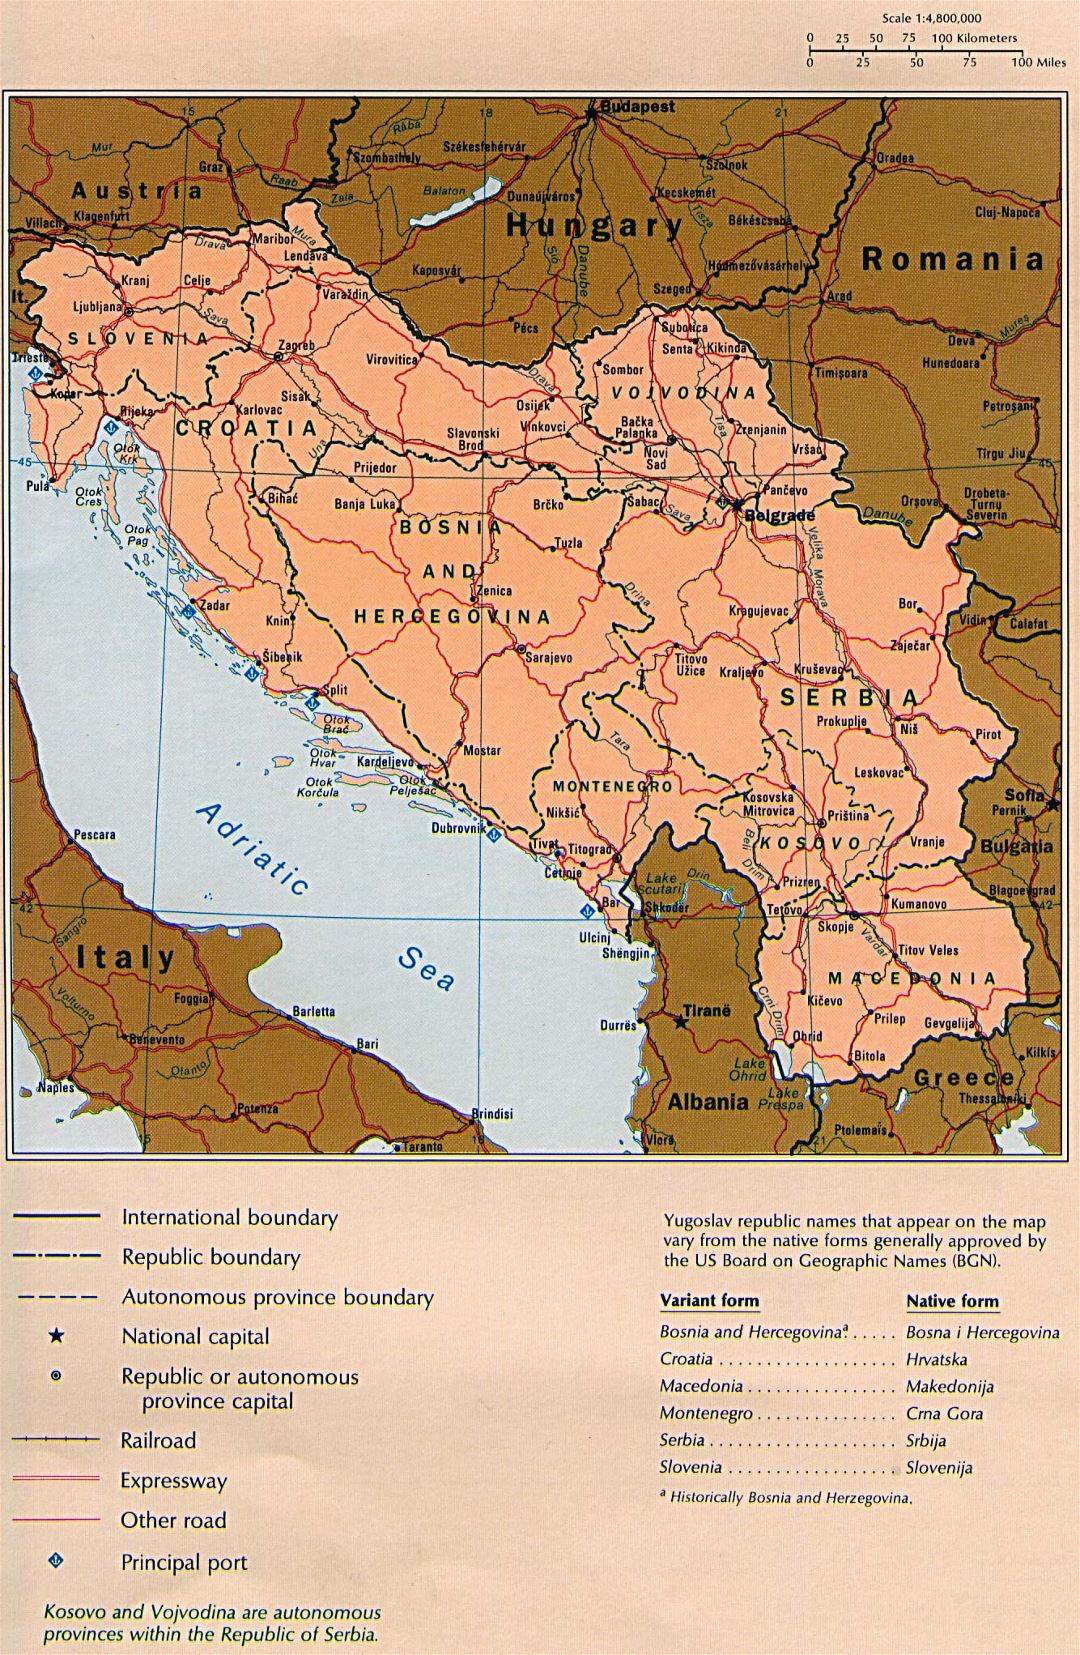 Grande detallado mapa político de Yugoslavia con carreteras, ferrocarriles y ciudades importantes